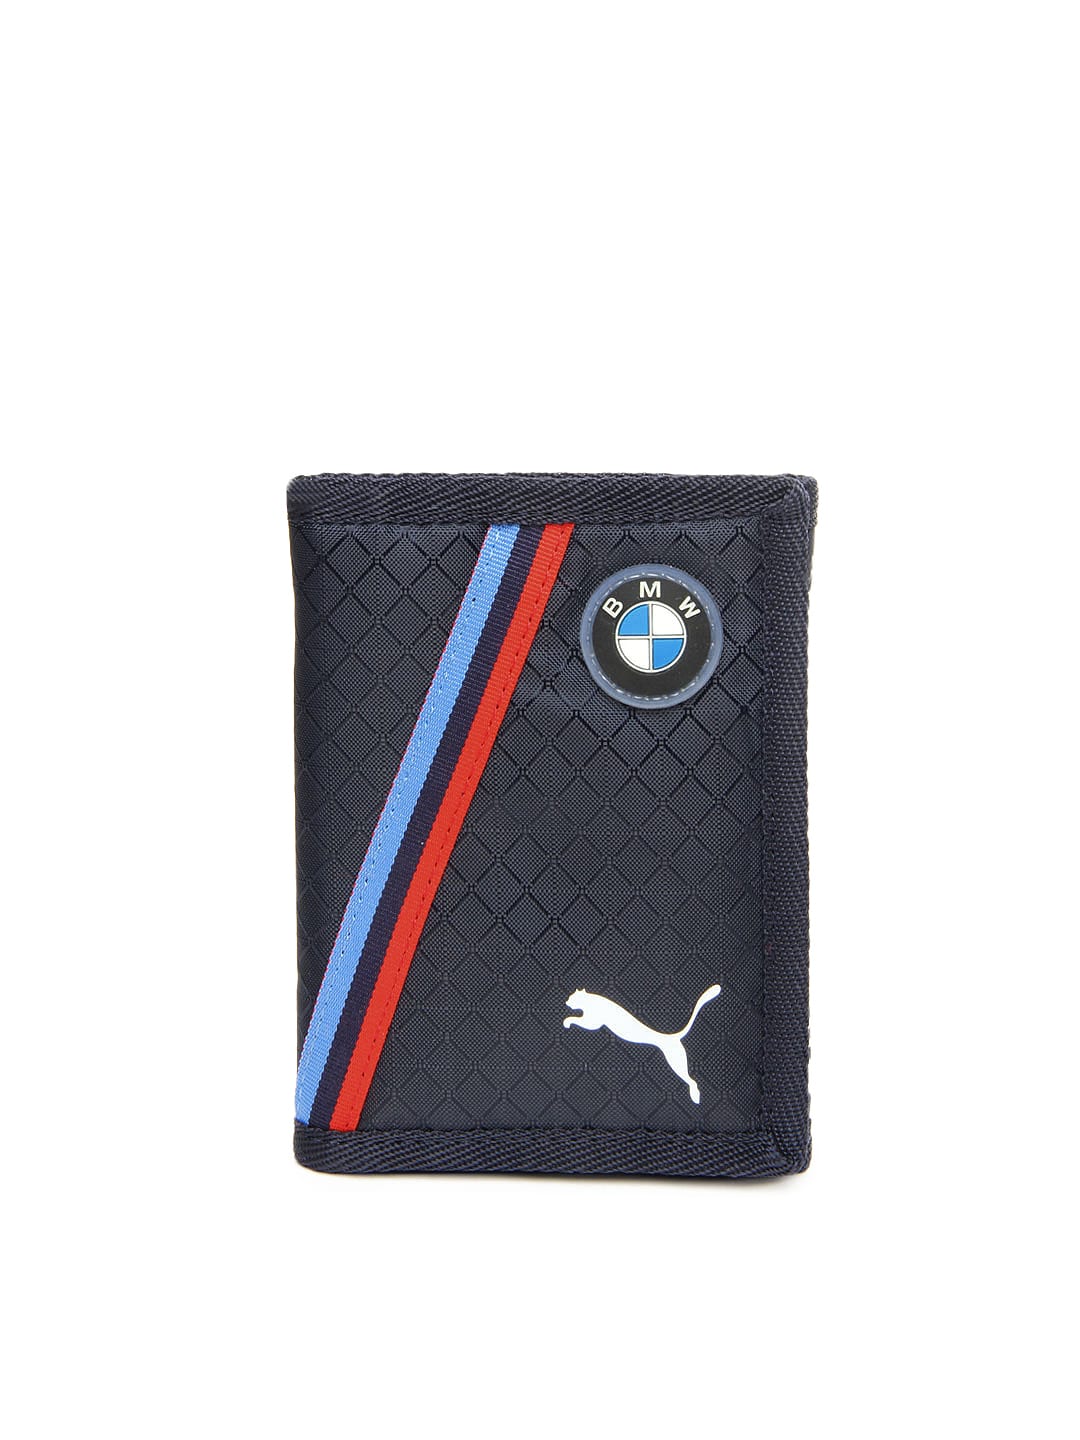 puma bmw wallet blue